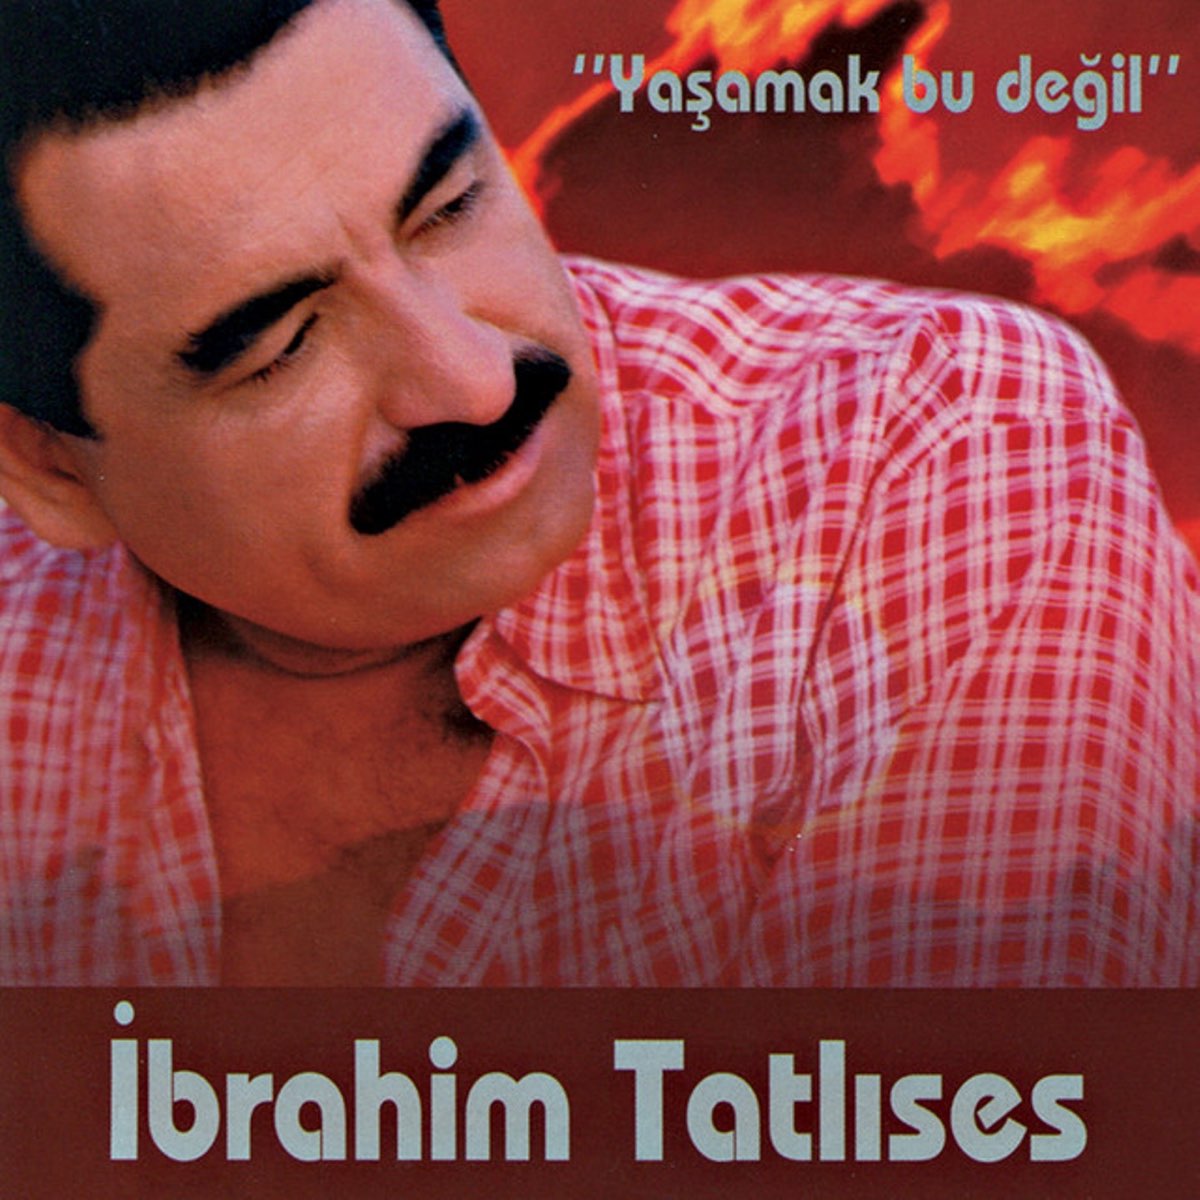 Yaşamak Bu Değil - Album by İbrahim Tatlıses - Apple Music